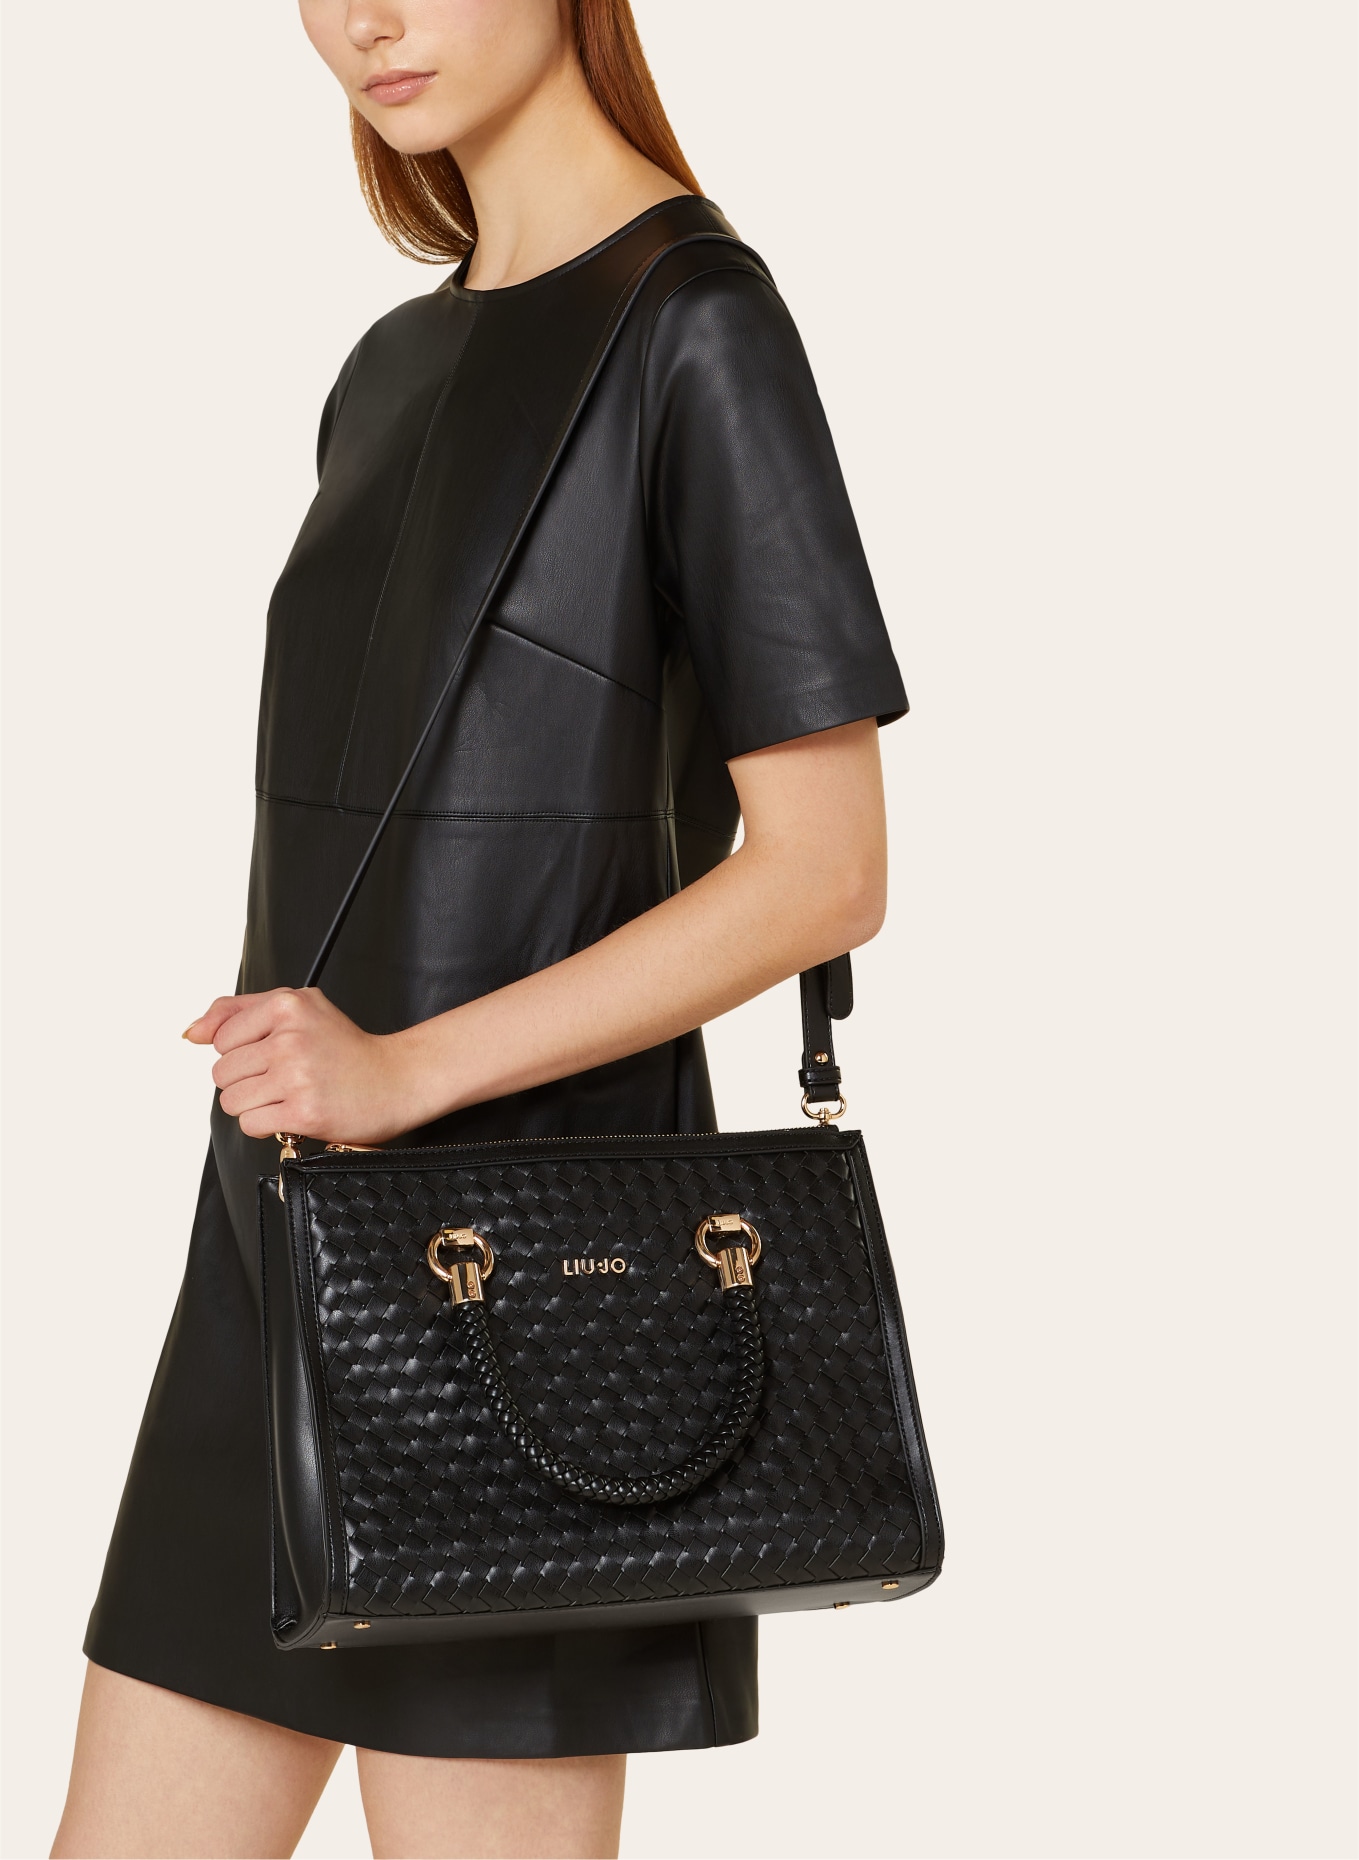 LIU JO Handbag, Color: BLACK (Image 4)